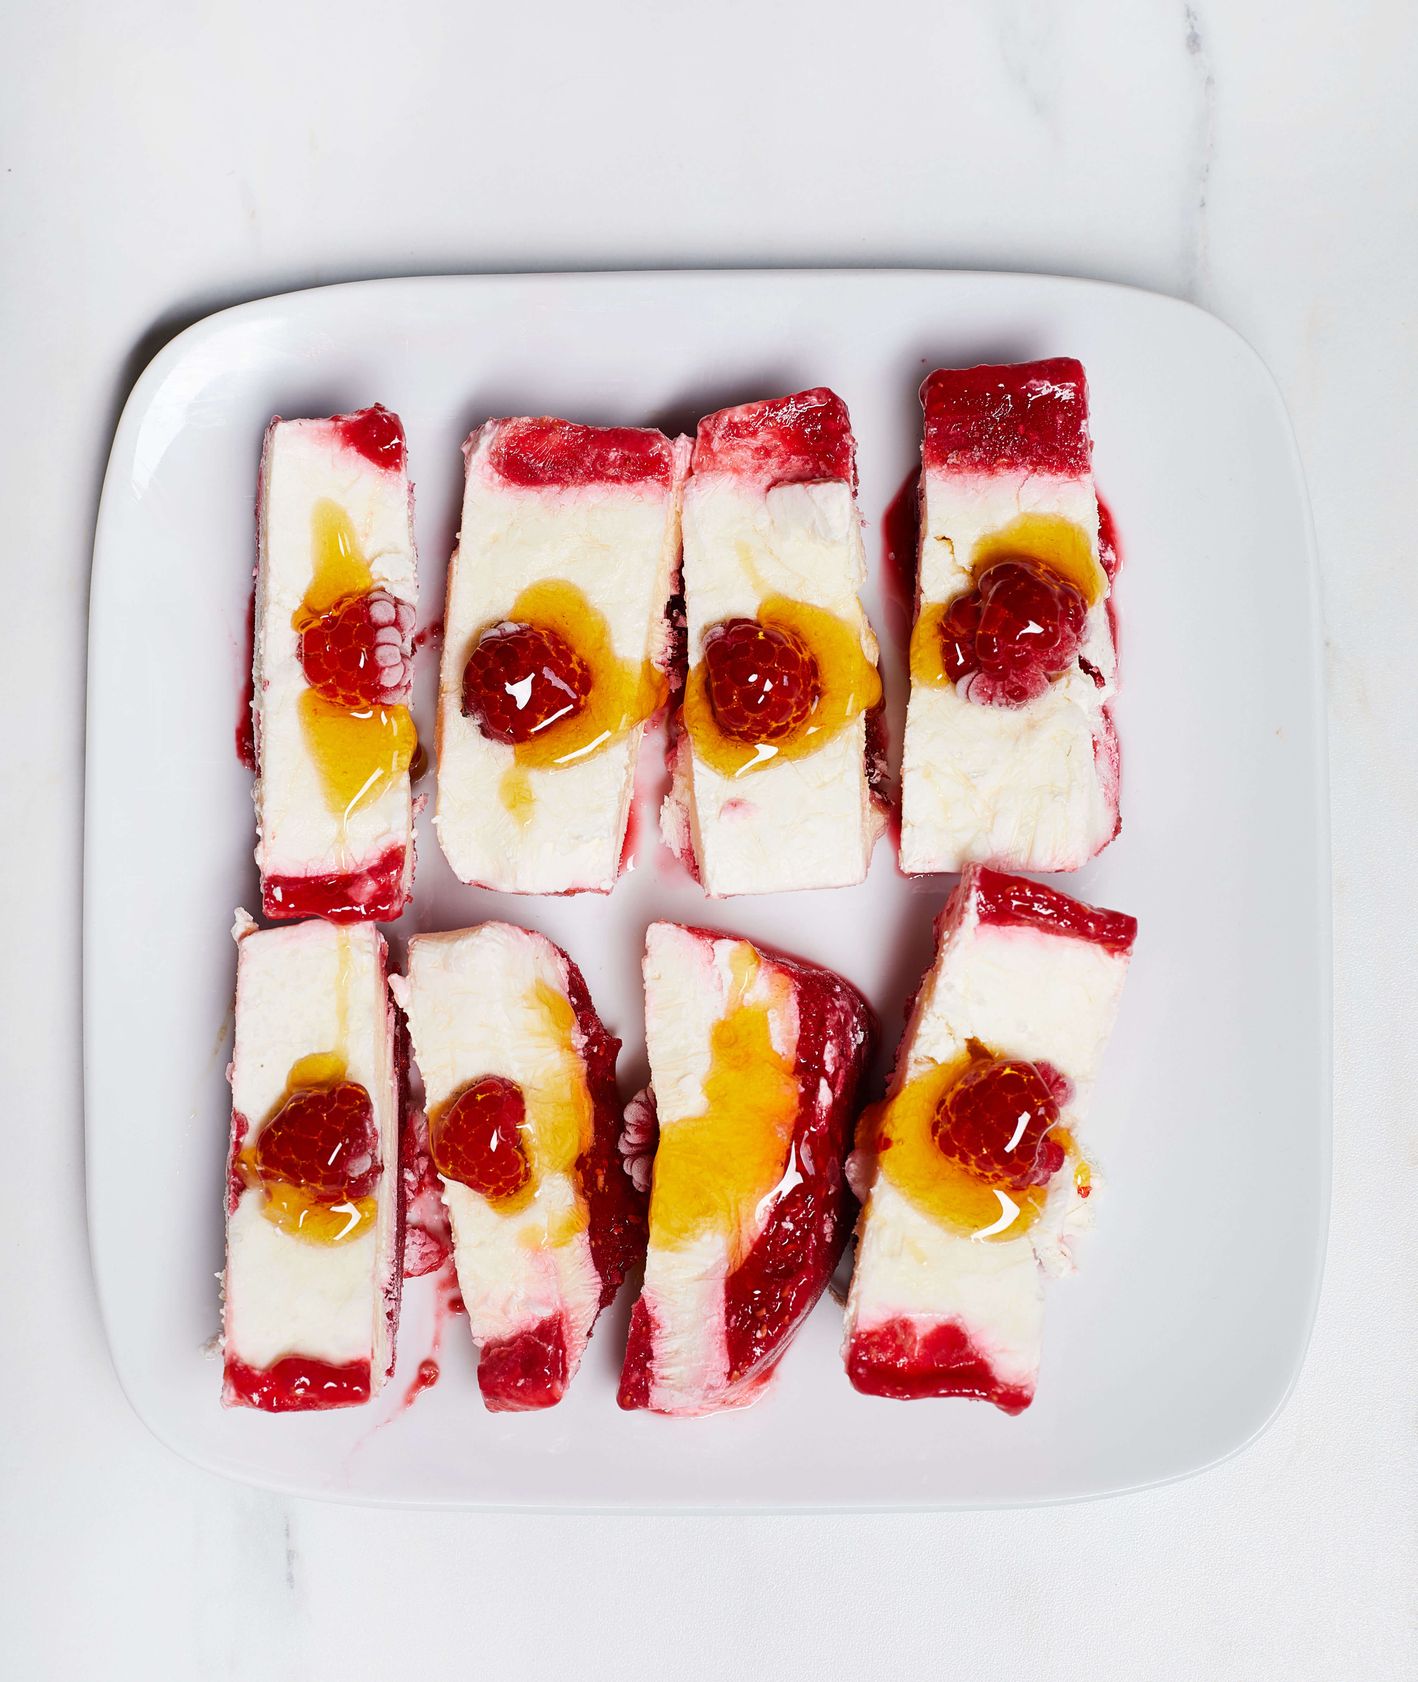 Domowe lody jogurtowe z malinami  (fot. Maciek Niemojewski)